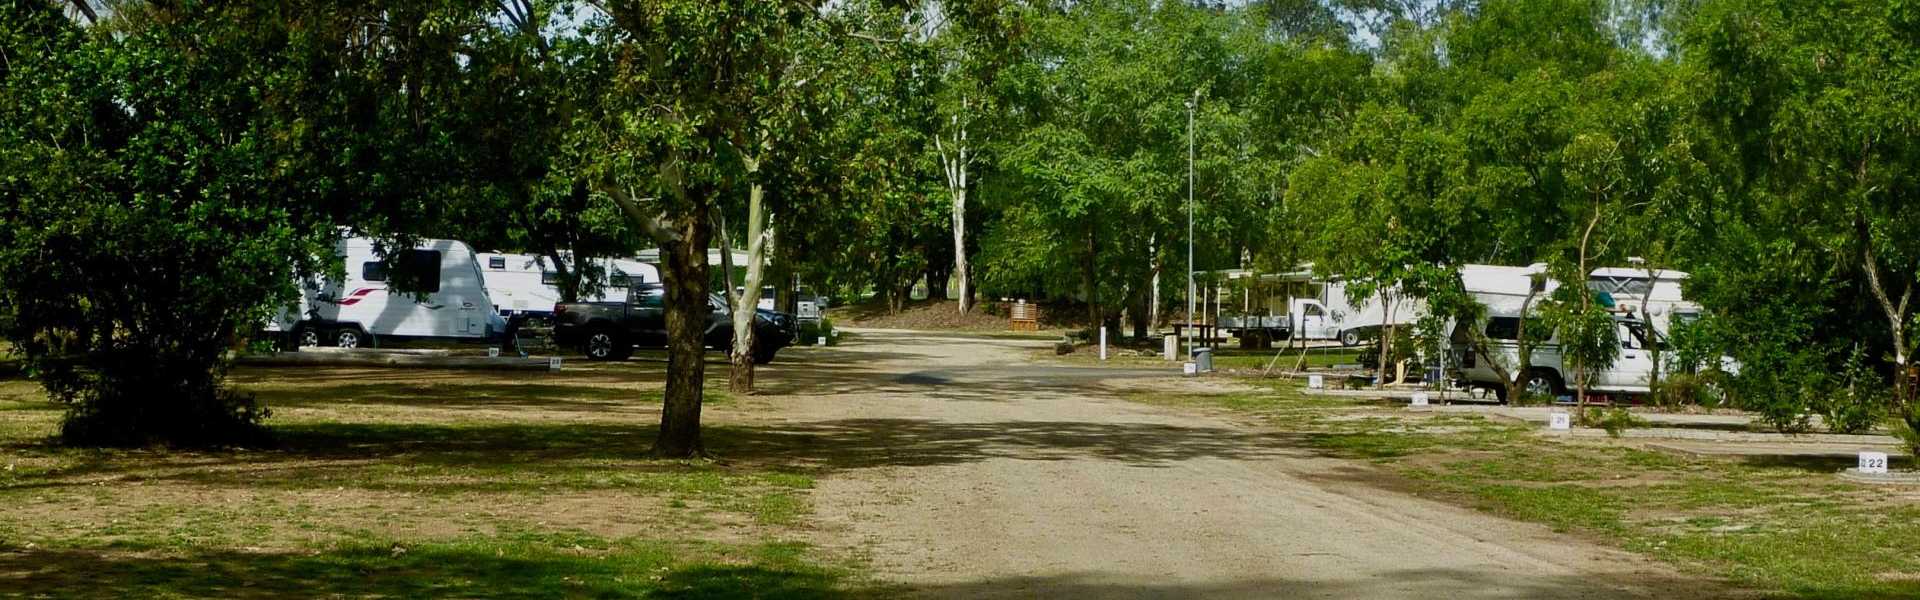 Kui Parks, Monto Caravan Park, Sites